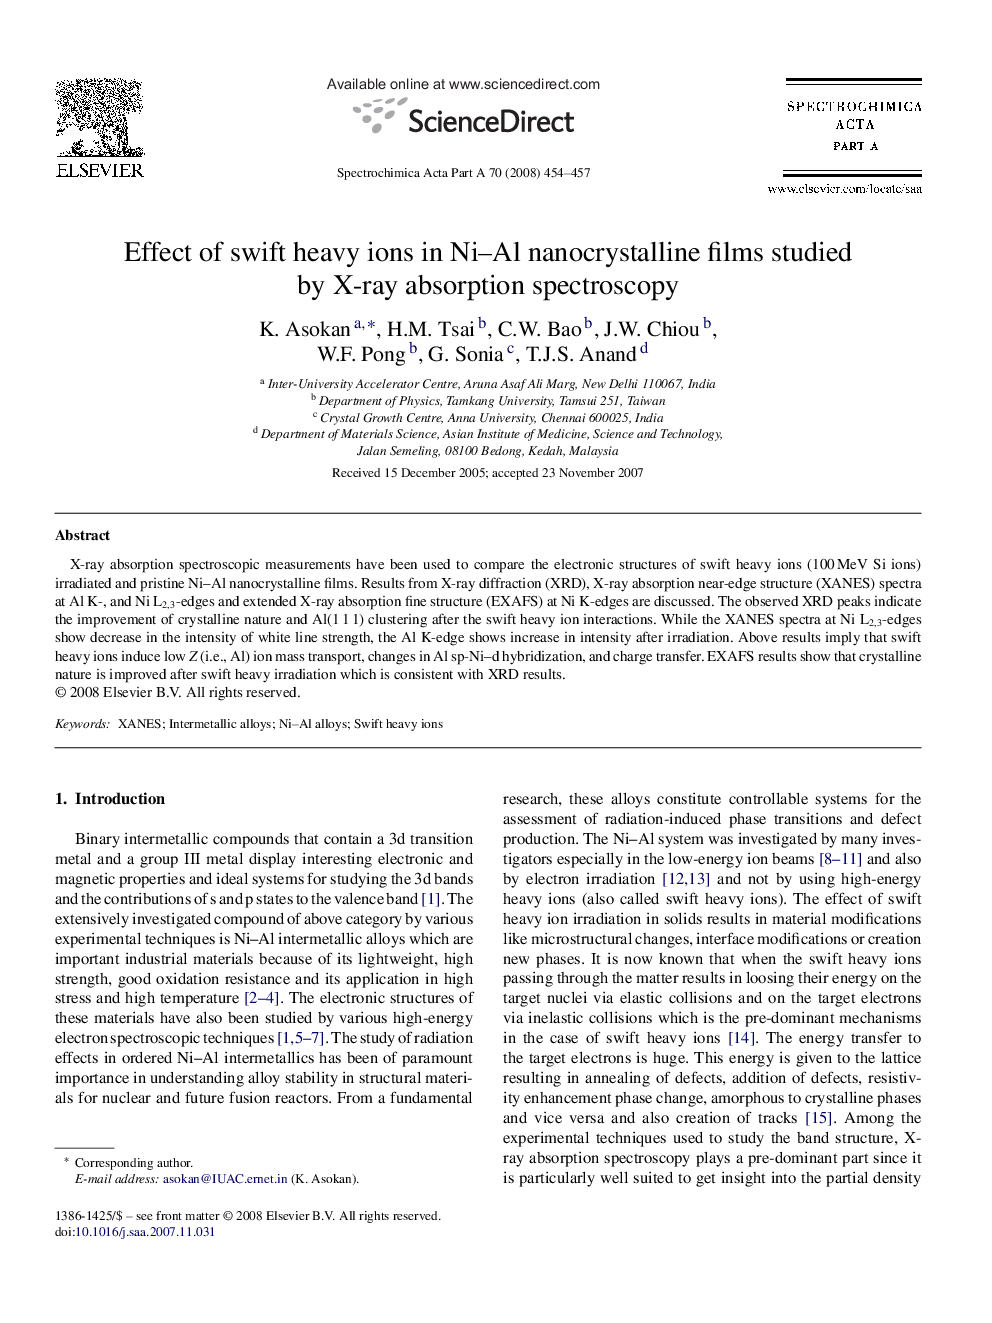 Effect of swift heavy ions in Ni-Al nanocrystalline films studied by X-ray absorption spectroscopy